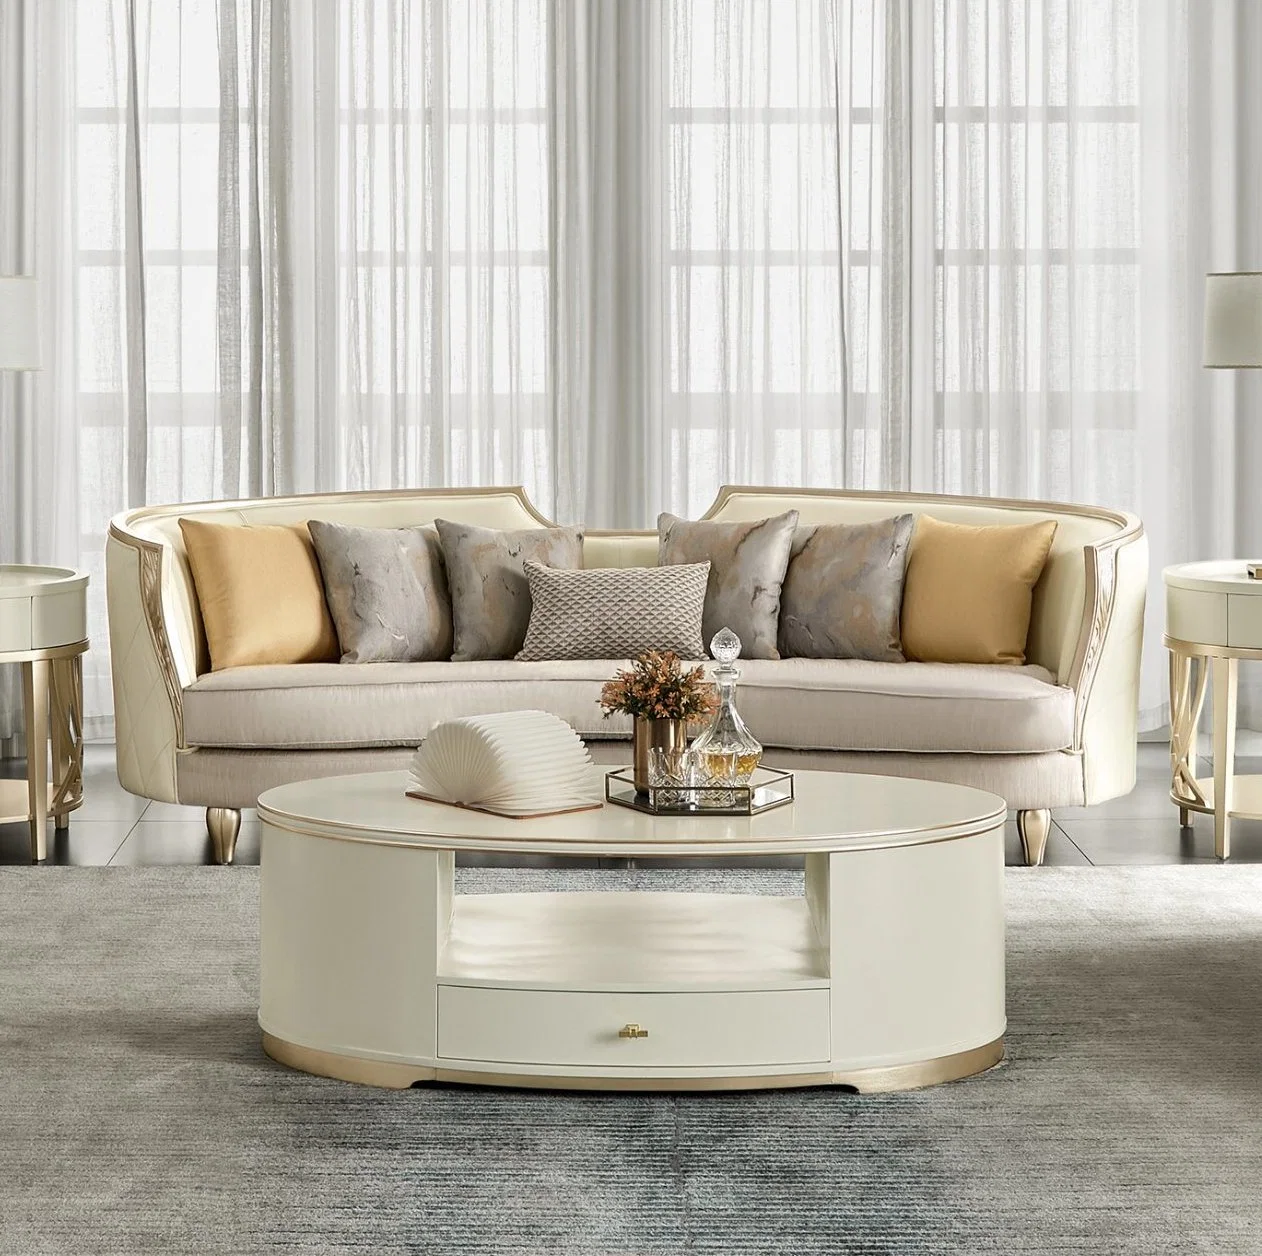 Muebles de hogar modernos, lujoso sofá de madera seccional para sala de estar, de cuero y tela.